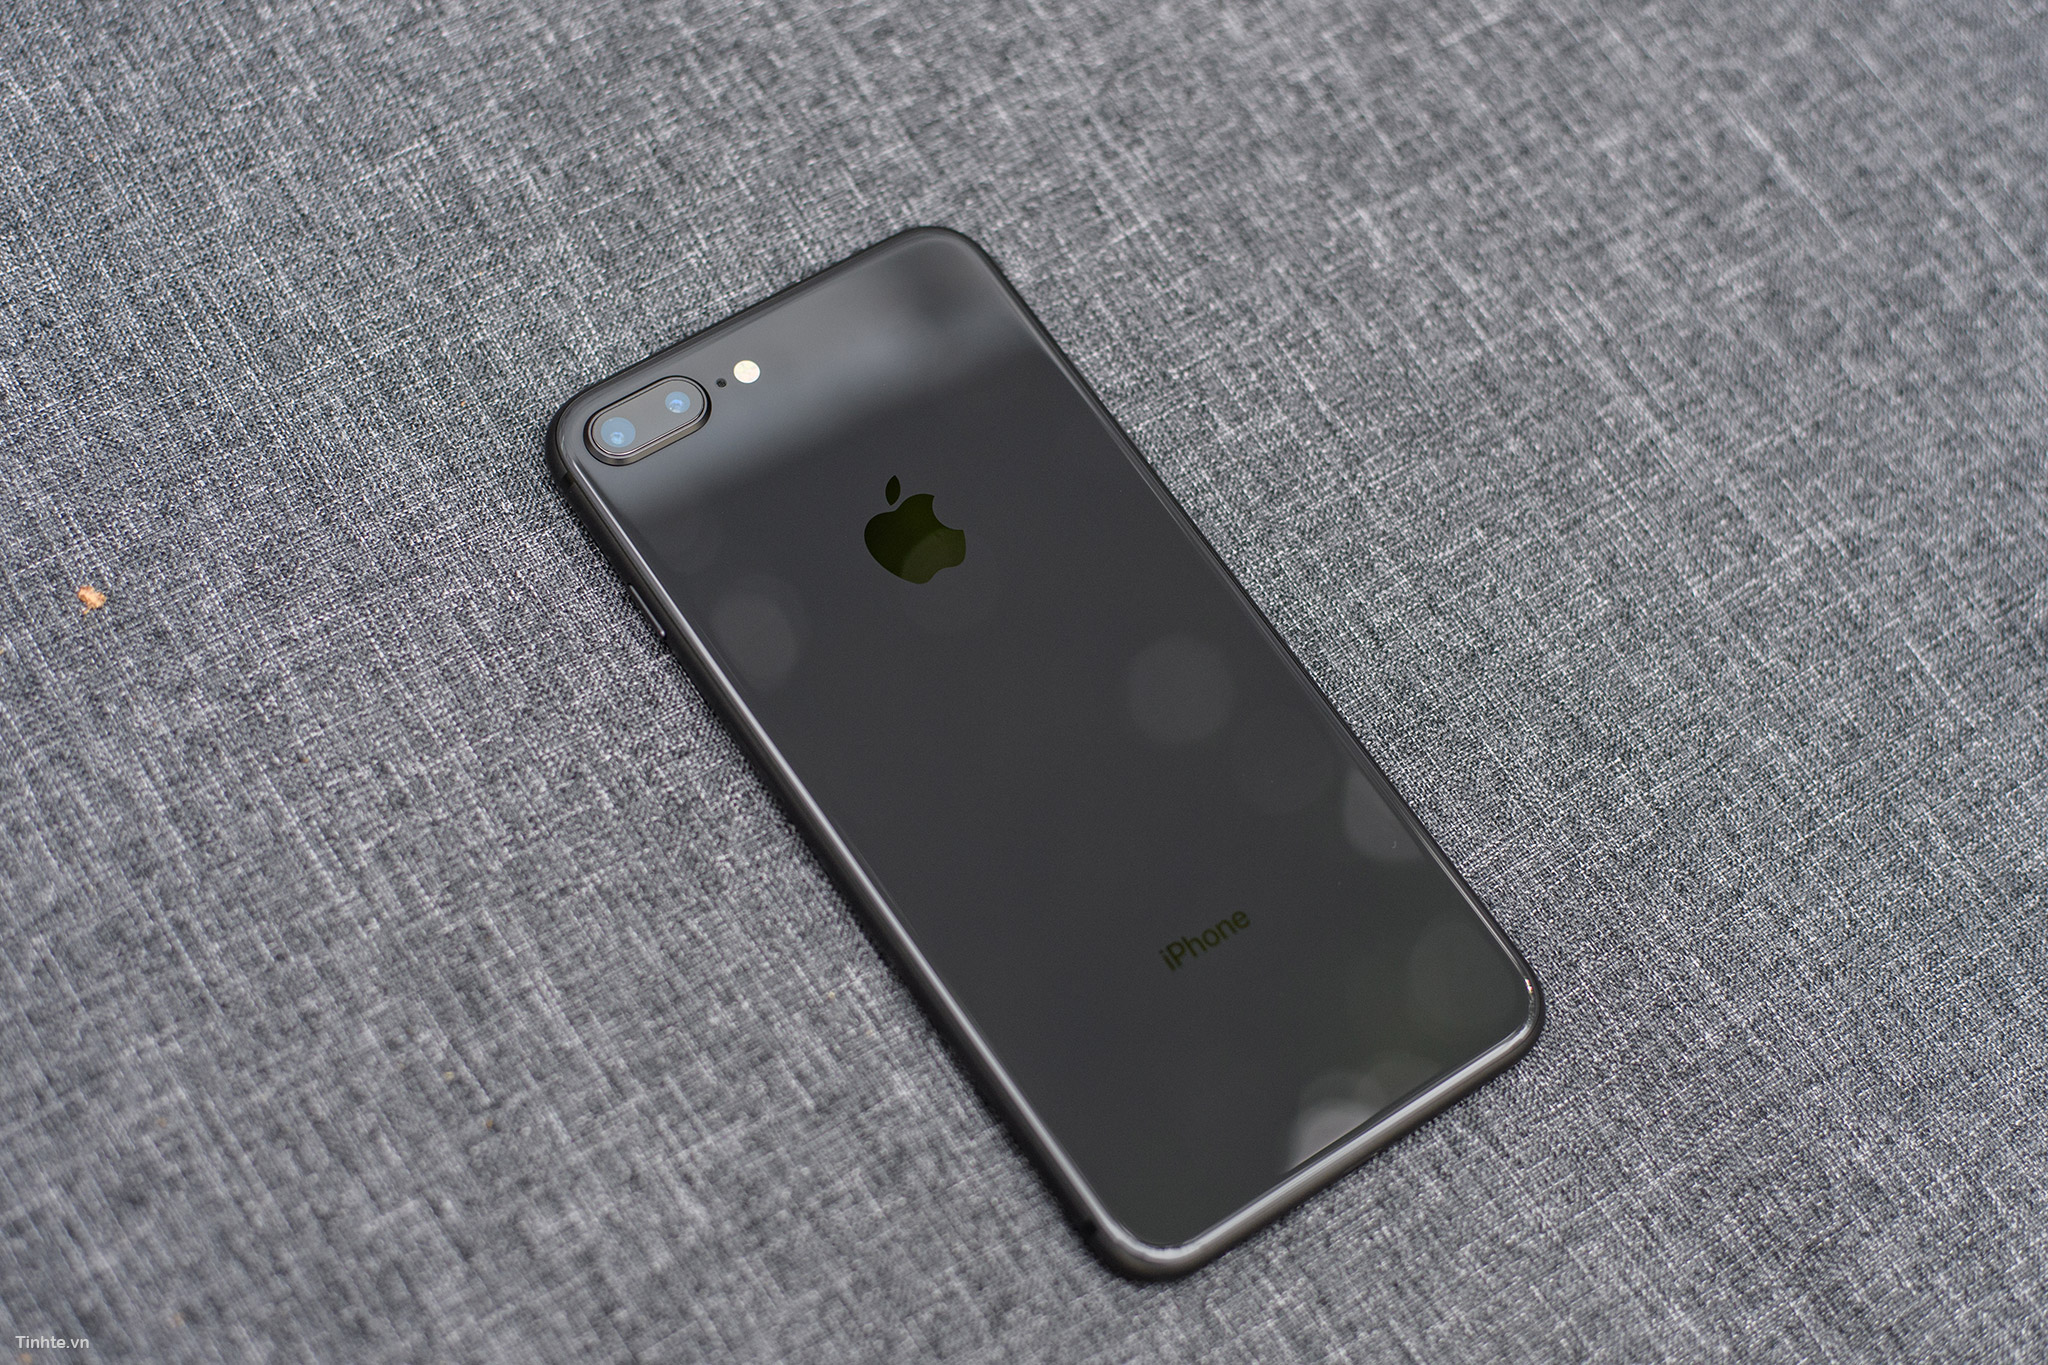 Hãy đến và khám phá chiếc iPhone 8/8 Plus Space Gray của chúng tôi! Với thiết kế siêu mỏng và những tính năng tuyệt vời như camera cực kỳ nổi bật và hiệu suất mạnh mẽ, chiếc iPhone này sẽ khiến bạn cảm thấy hài lòng về sự lựa chọn của mình.